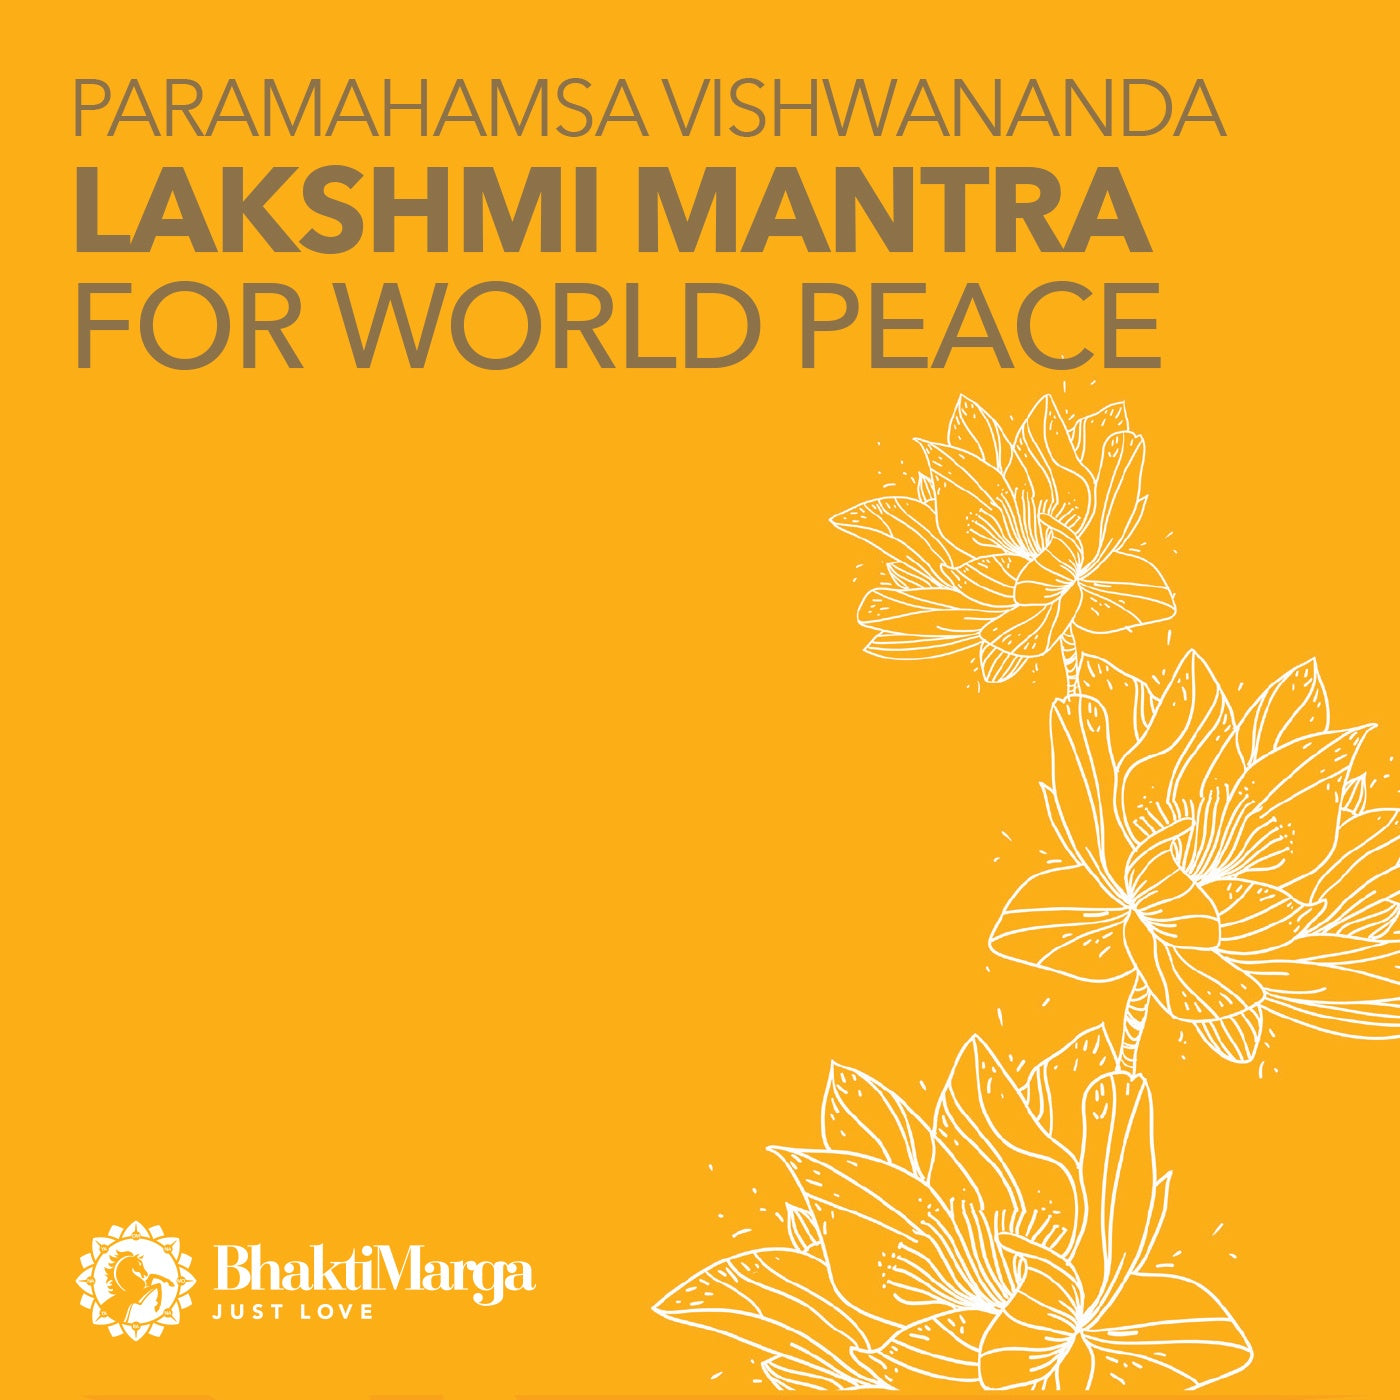 Lakshmi mantra for World Peace - Paramahamsa Vishwananda